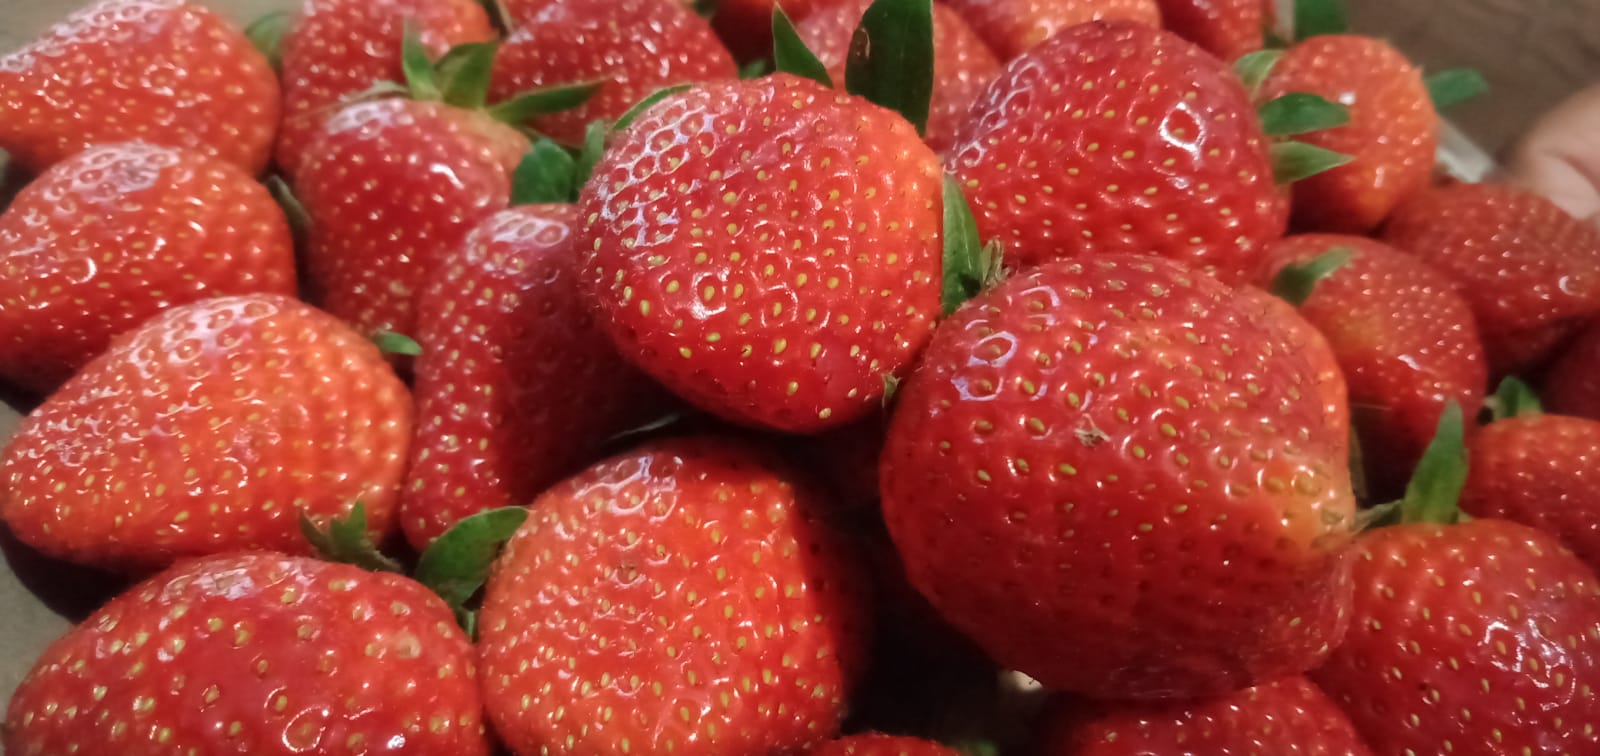 Segudang Manfaat Strawberry untuk Kesehatan & Kecantikan